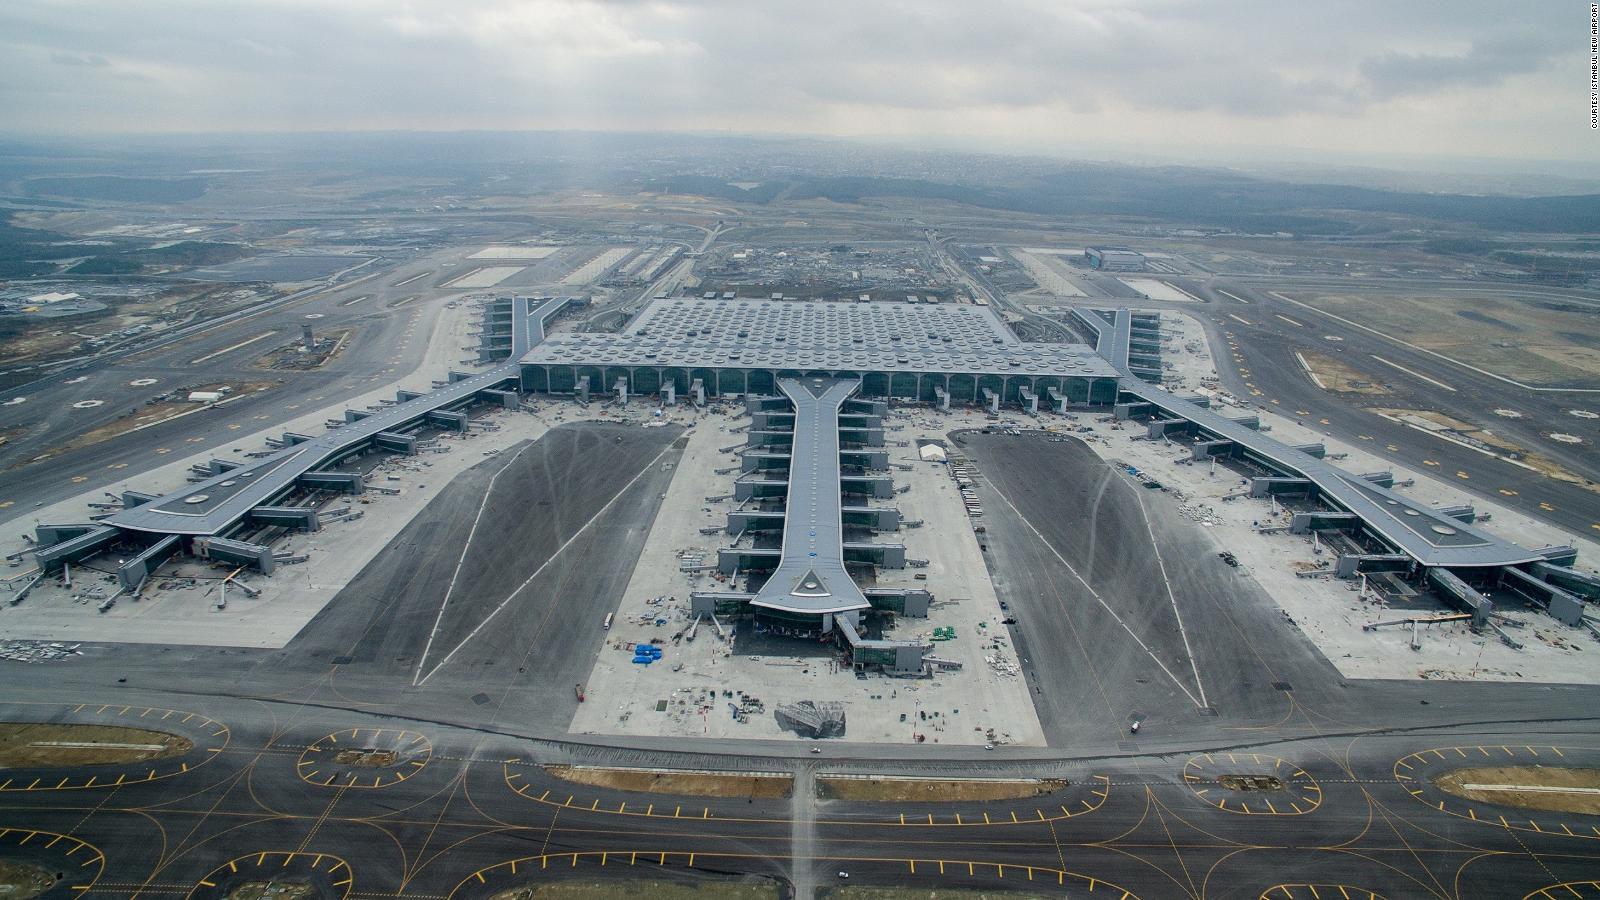 Archisearch Οι πούδρες Interpon D2525 της AkzoNobel στο μεγαλύτερο αεροδρόμιο στον κόσμο στην Κωνσταντινούπολη